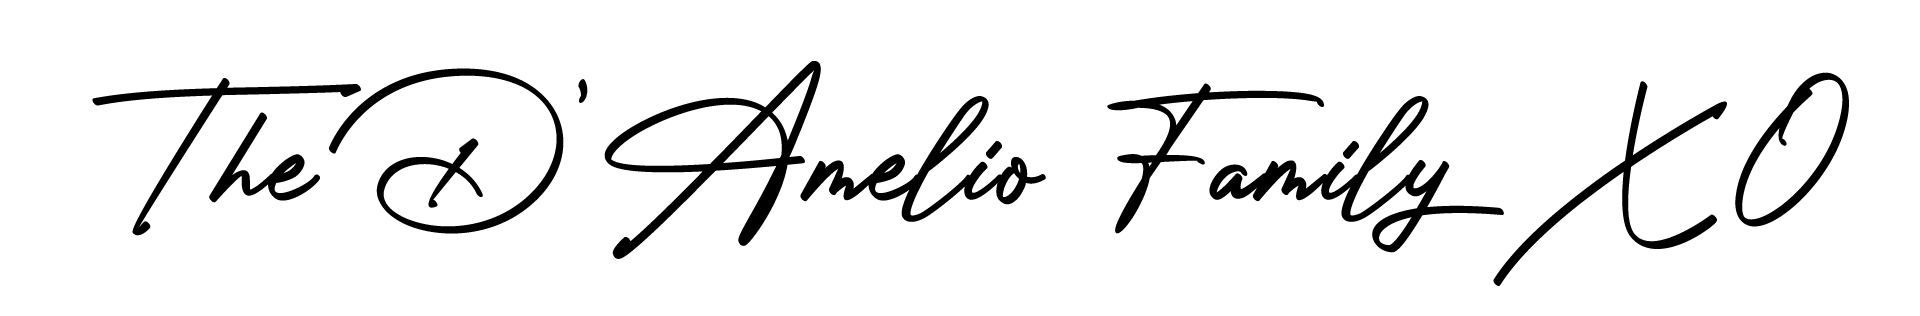 D'Amelio Family Signature